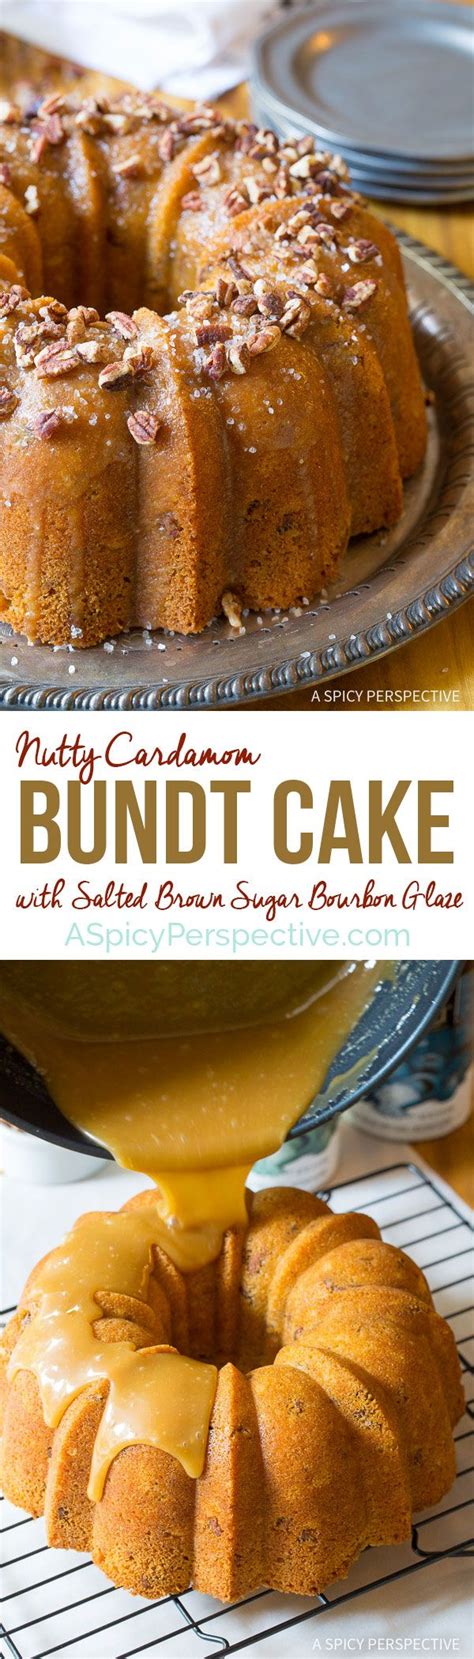 Crazy Over This Nutty Cardamom Bundt Cake With Bourbon Glaze On